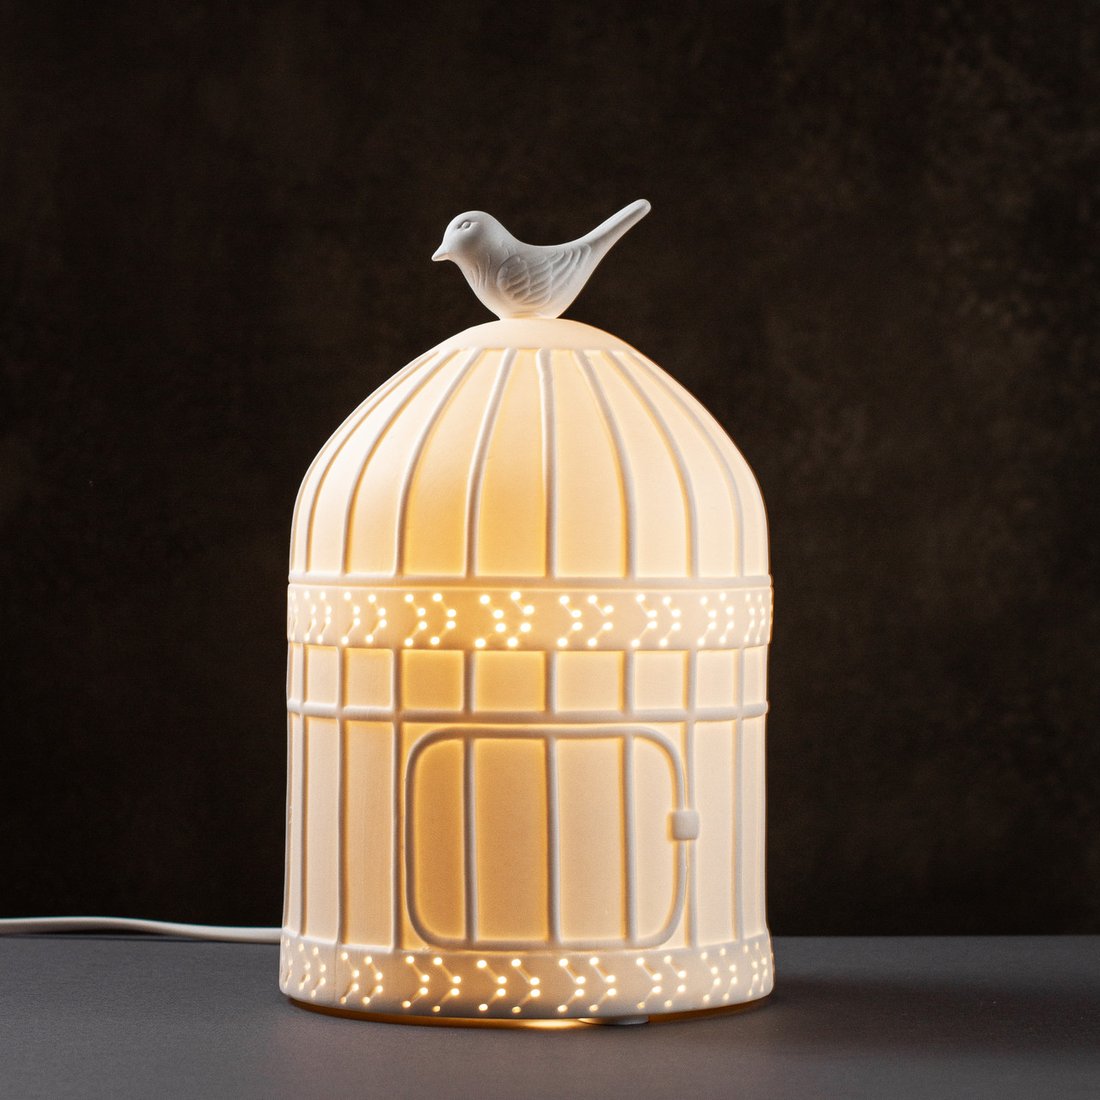 Настольная фарфоровая лампа-ночник "Птичка и клетка", ручная работа, с регулировкой цвета освещения 16 цветов!